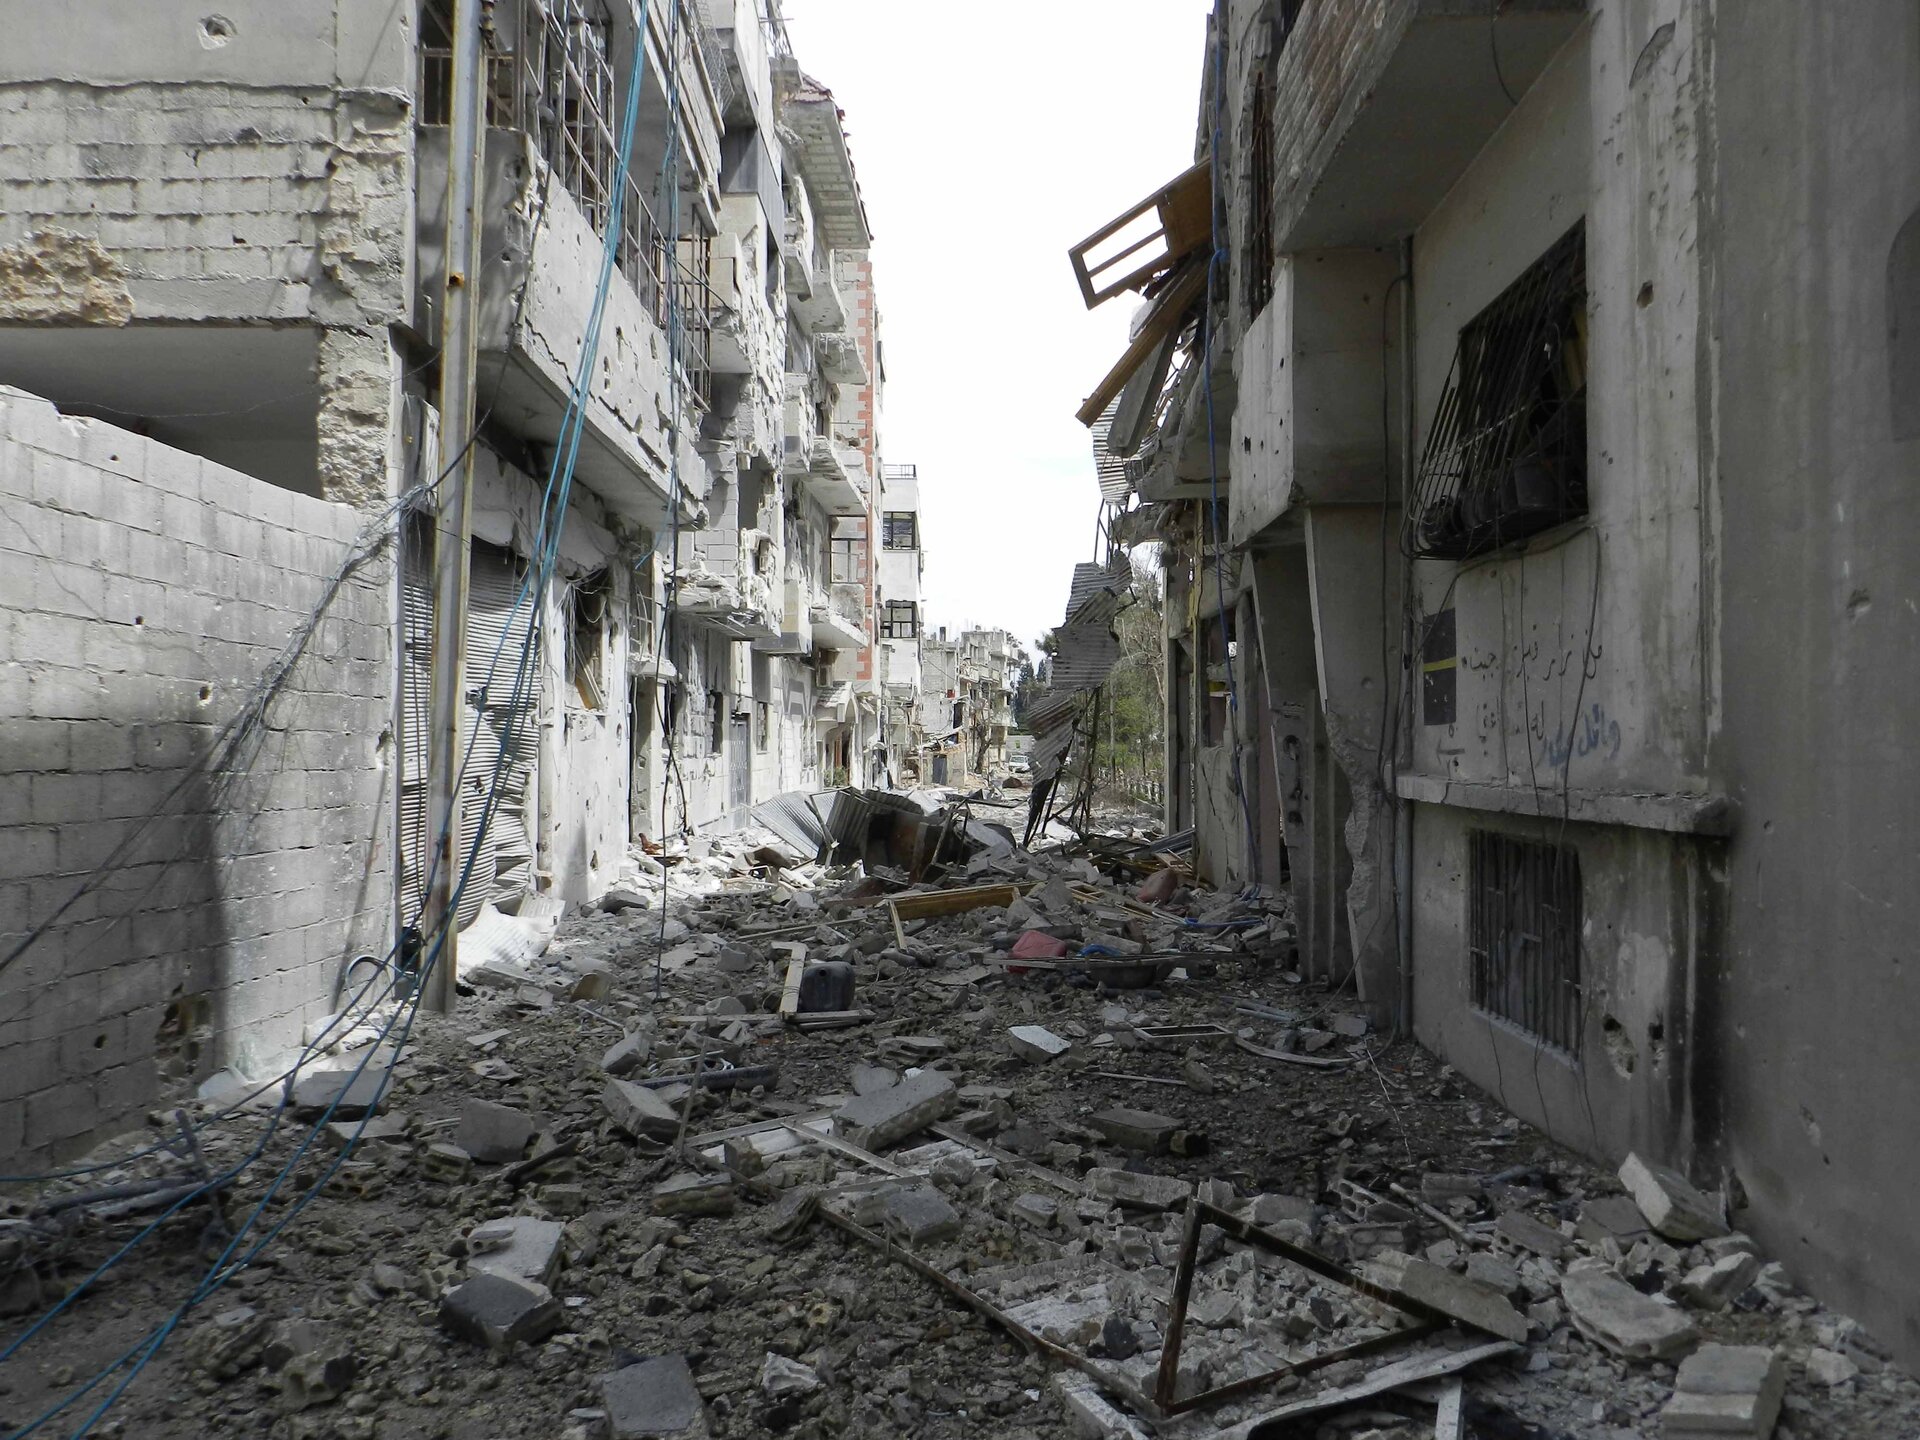 Zdjęcie, które przedstawia zniszczenia w Hims wywołane ofensywą wojska syryjskiego. Widoczne ruiny, zniszczenia po działaniach wojennych.
Po prawej i lewej stronie widać zbombardowane domy. Nie ma w nich okien, drzwi. Widoczne żelazne kraty i zwisające kable z domów. Po prawej stronie część domu zupełnie zniszczona. Widoczne pustaki na domach. Pomiędzy domami ulica, na której leży sporo gruzu.